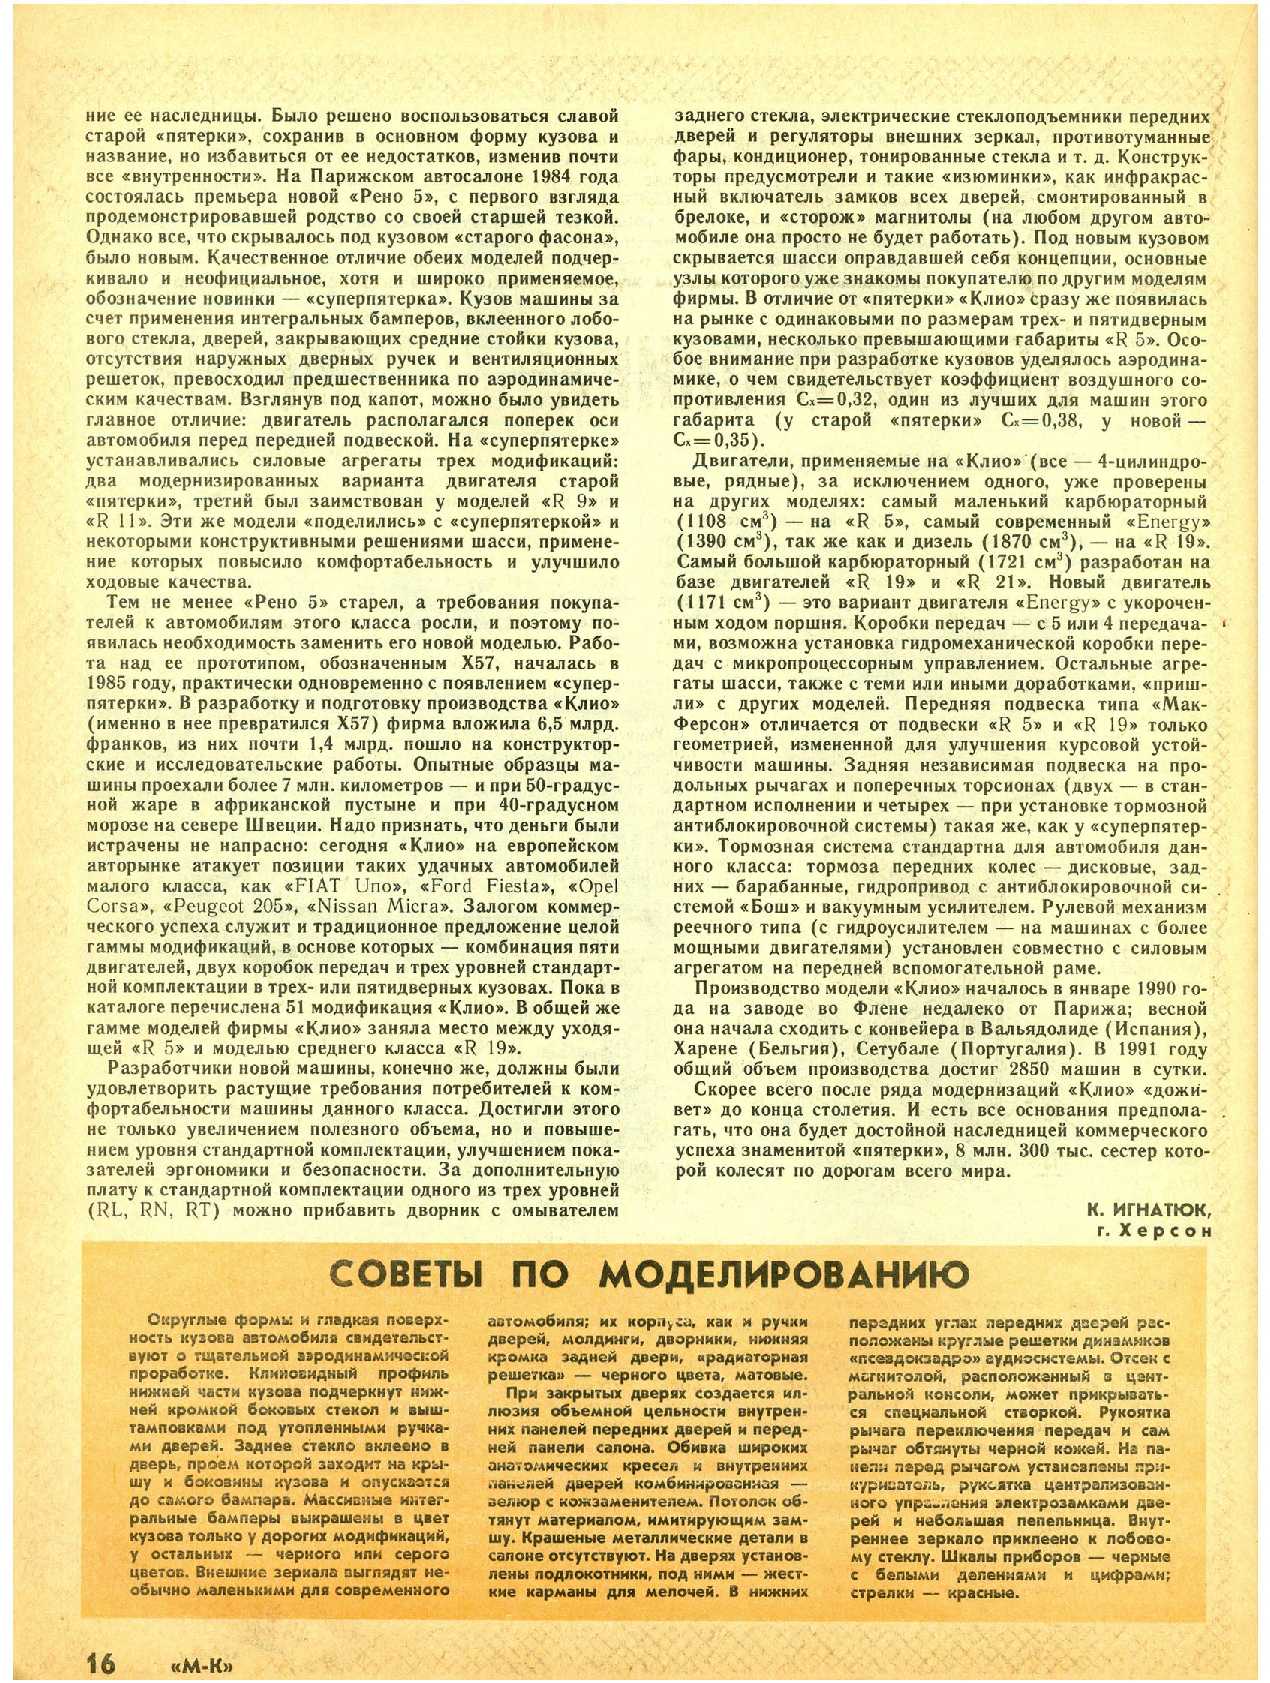 МК 1-2, 1992, 16 c.